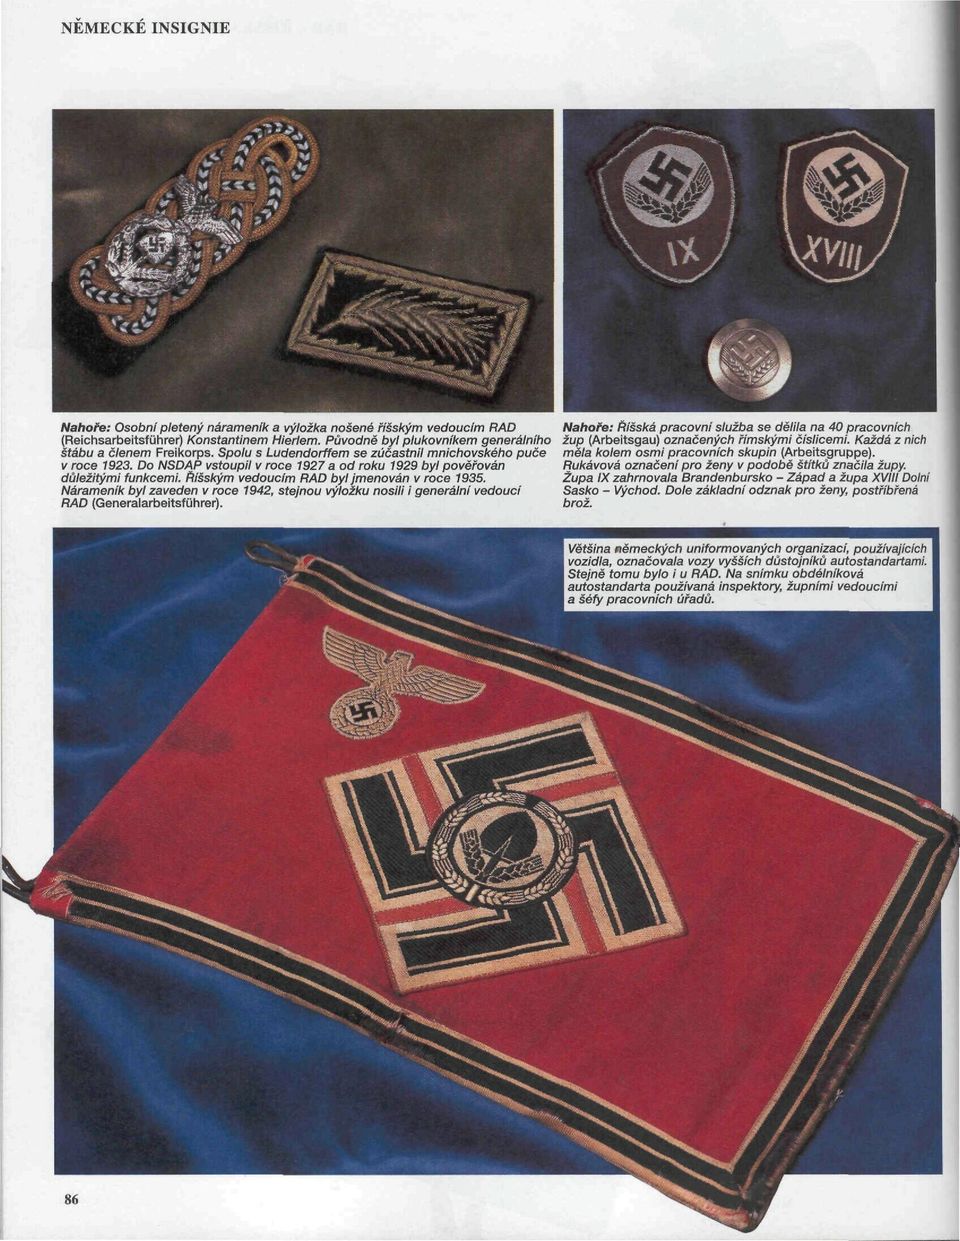 Nárameník byl zaveden v roce 1942, stejnou výložku nosili i generální vedoucí RAD {Generalarbeitsführer).